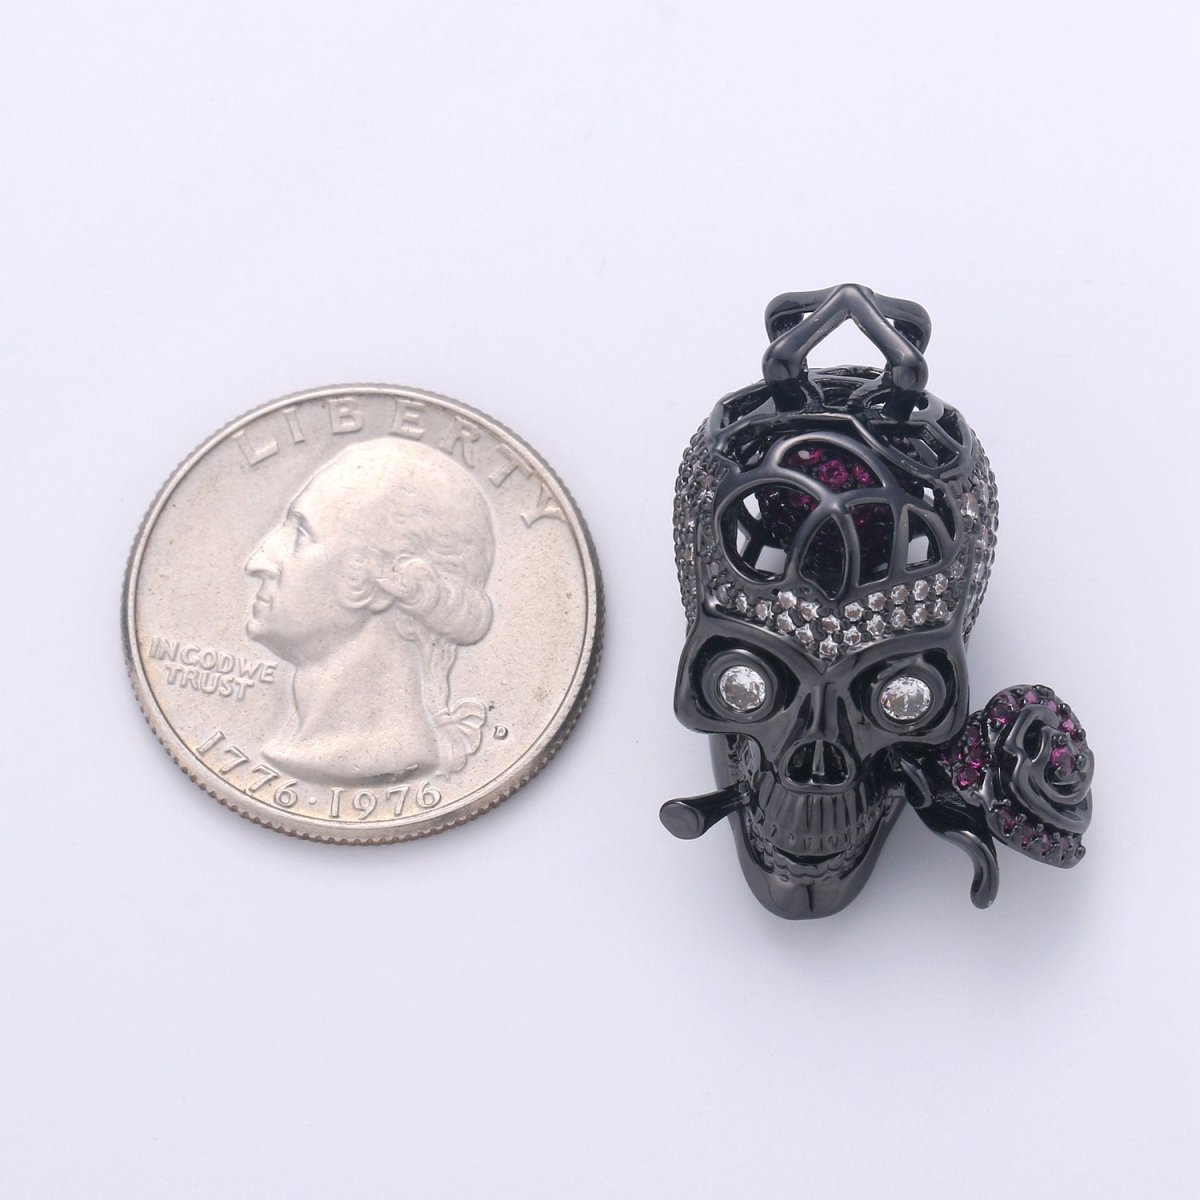 3D black eye skull charm/pendant, for DIY Jewelry Making European Charms Beaded Bracelet, Skull Necklace I-900 - DLUXCA